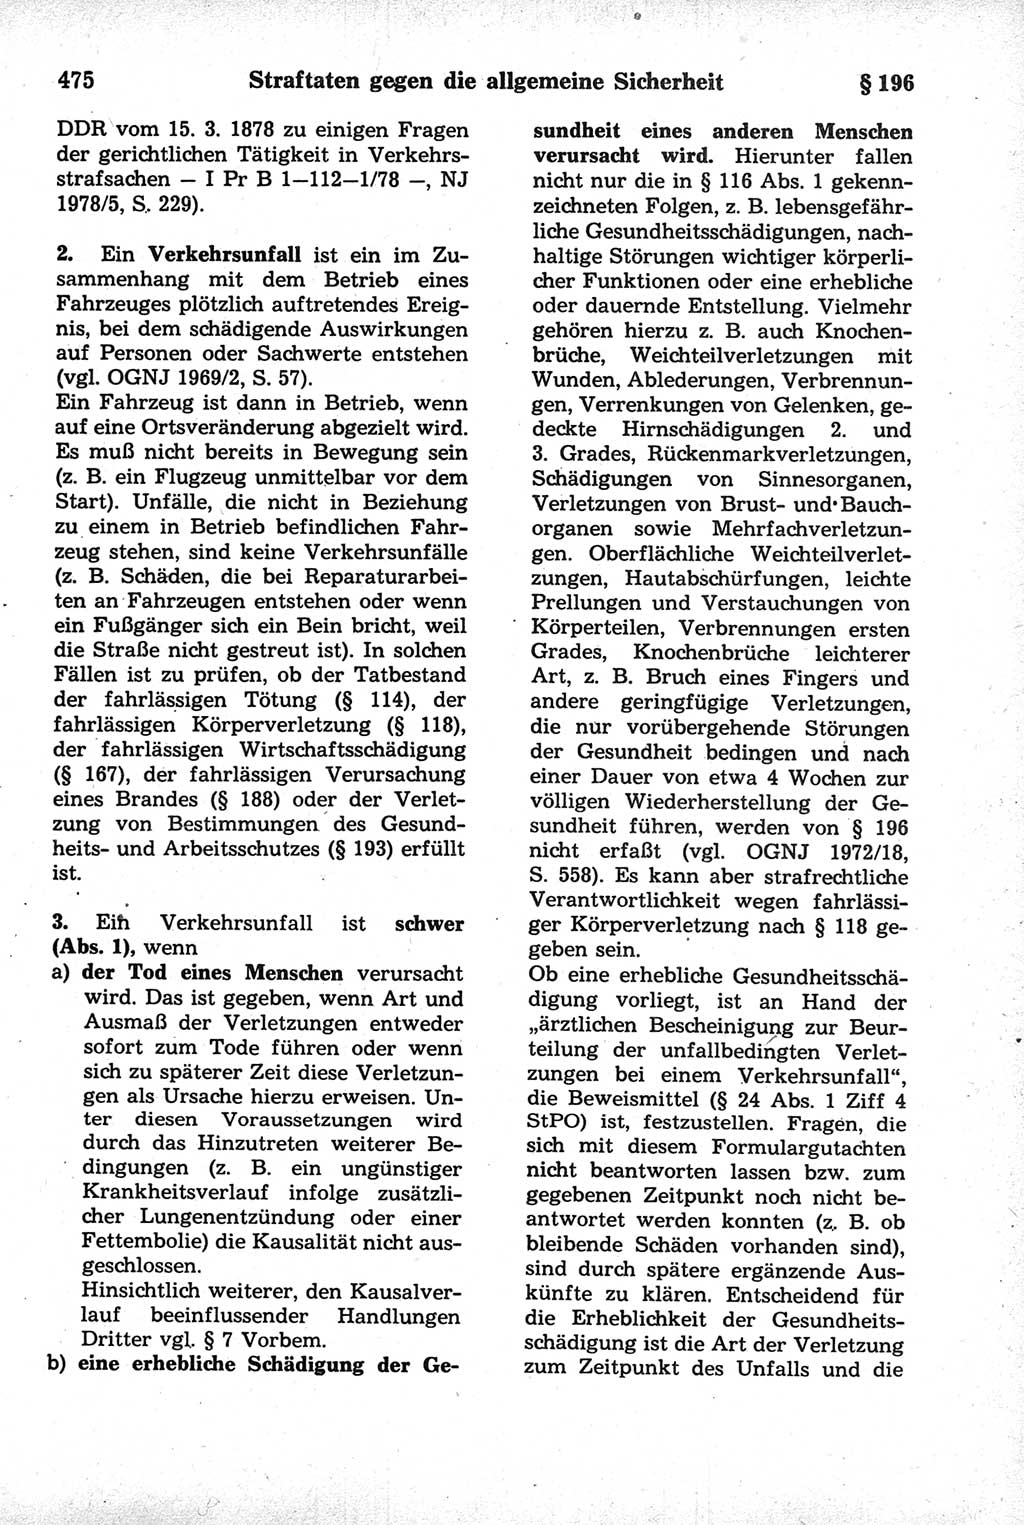 Strafrecht der Deutschen Demokratischen Republik (DDR), Kommentar zum Strafgesetzbuch (StGB) 1981, Seite 475 (Strafr. DDR Komm. StGB 1981, S. 475)